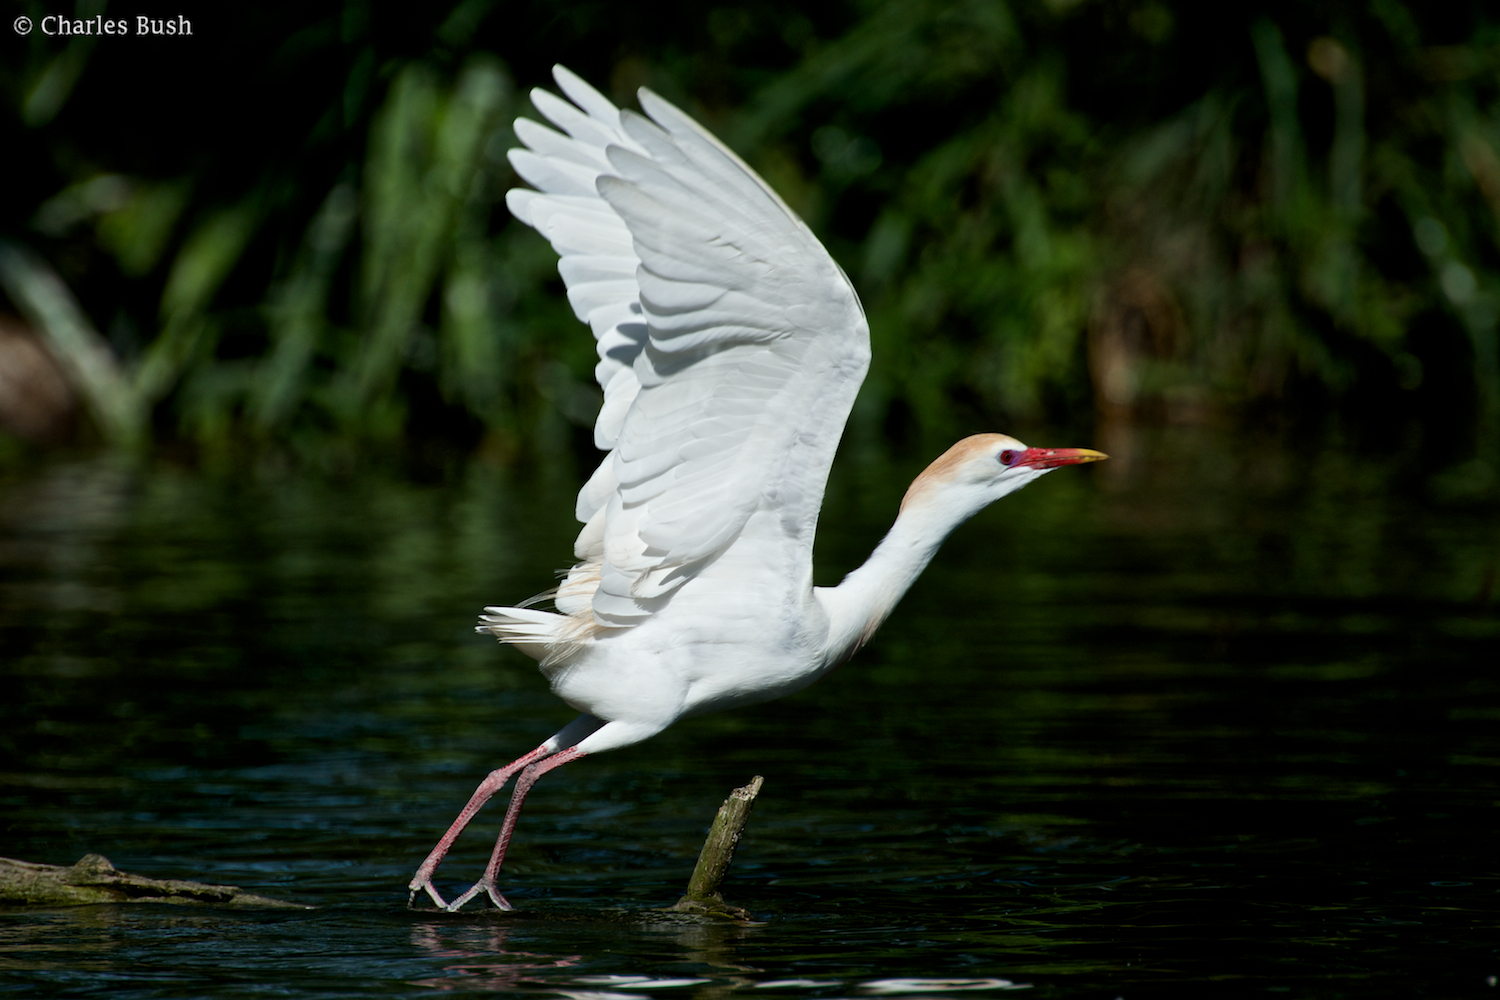 Cattle Egret in Flight